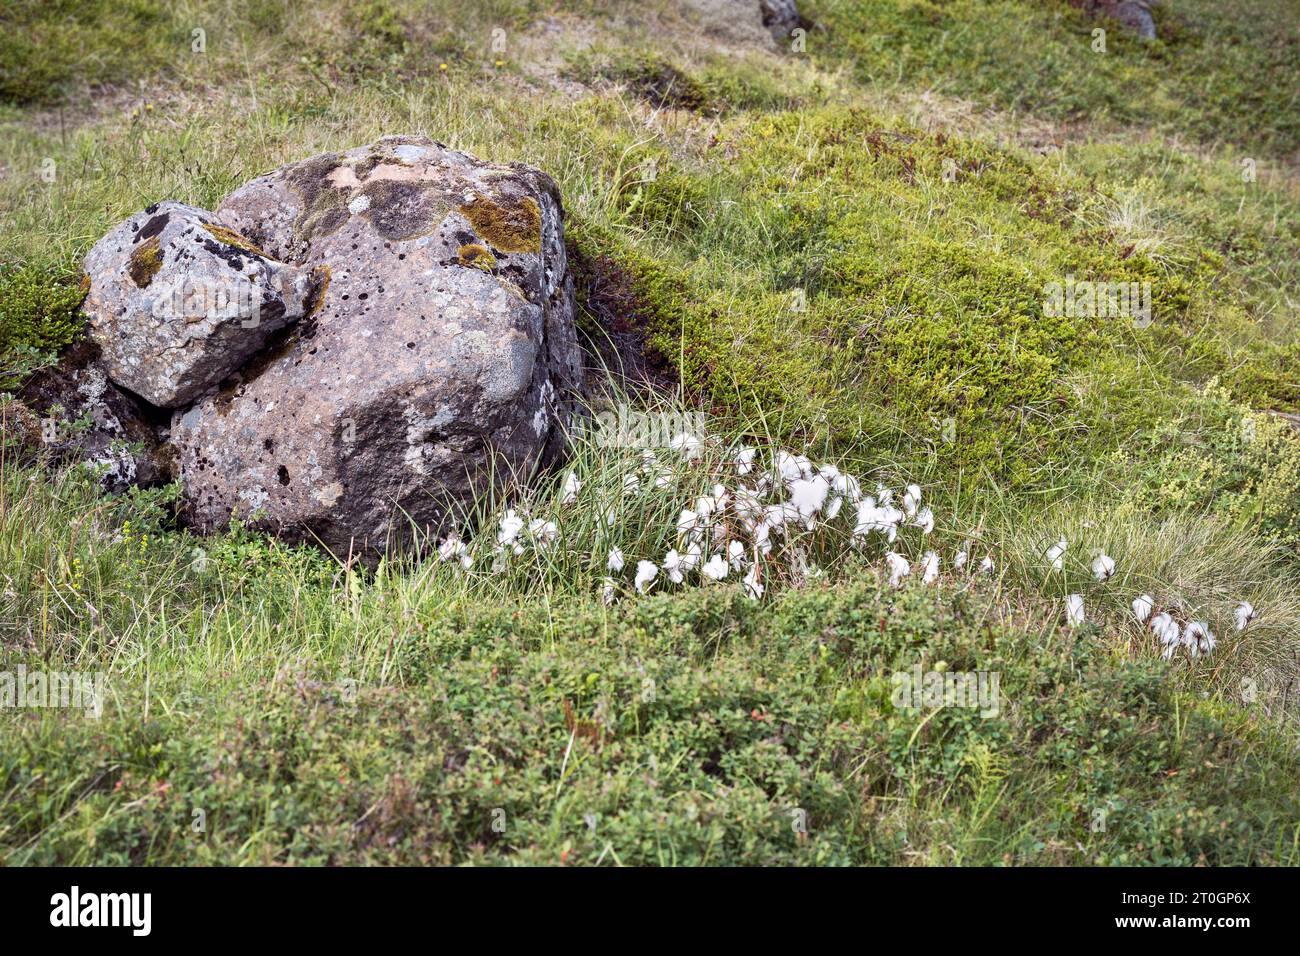 Carex de coton blanc commun Eriophorum angustifolium à côté d'un rocher couvert de lichens entouré d'une épaisse végétation de toundra dans les Westfjords Islande Banque D'Images